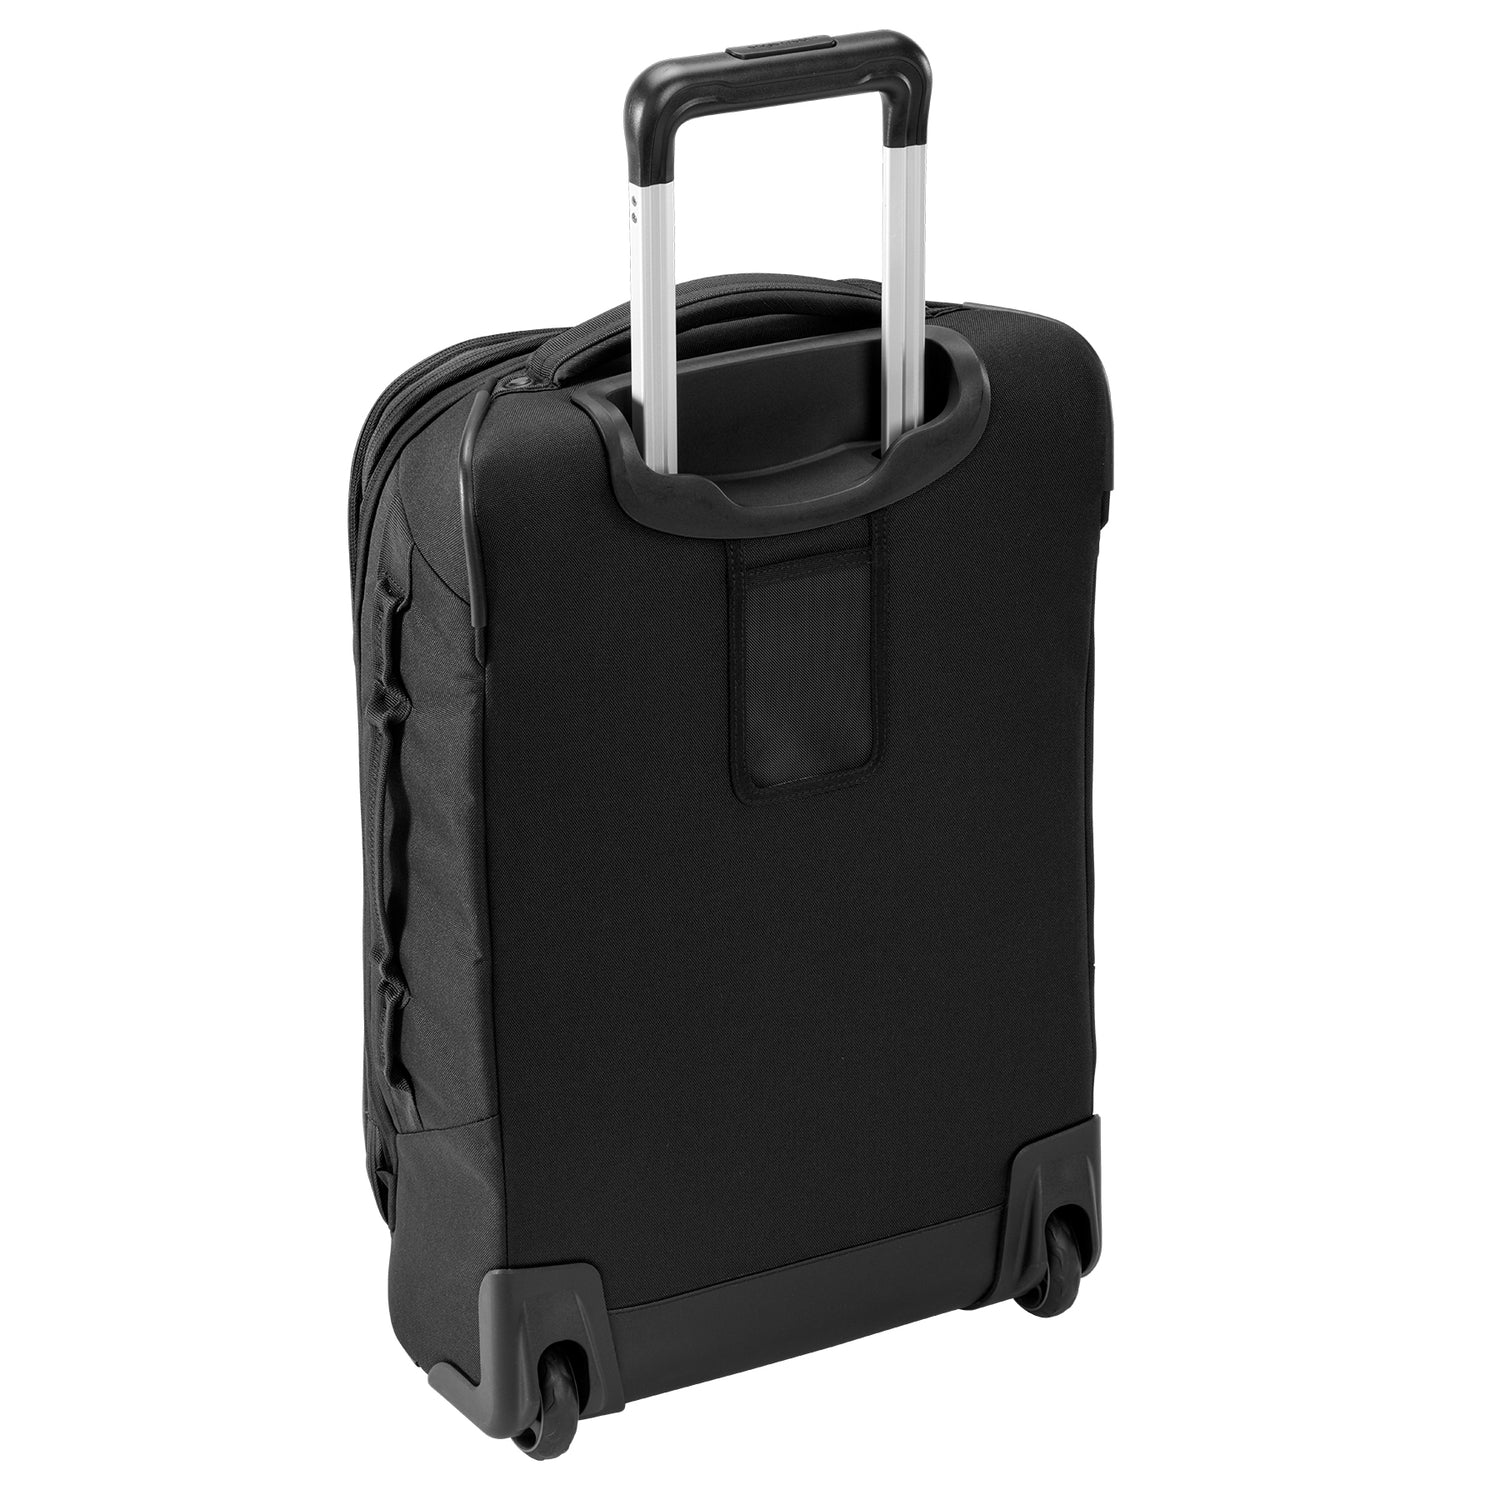 Expanse 2-Wheel 21.5" International Carry-On Luggage - BLACK